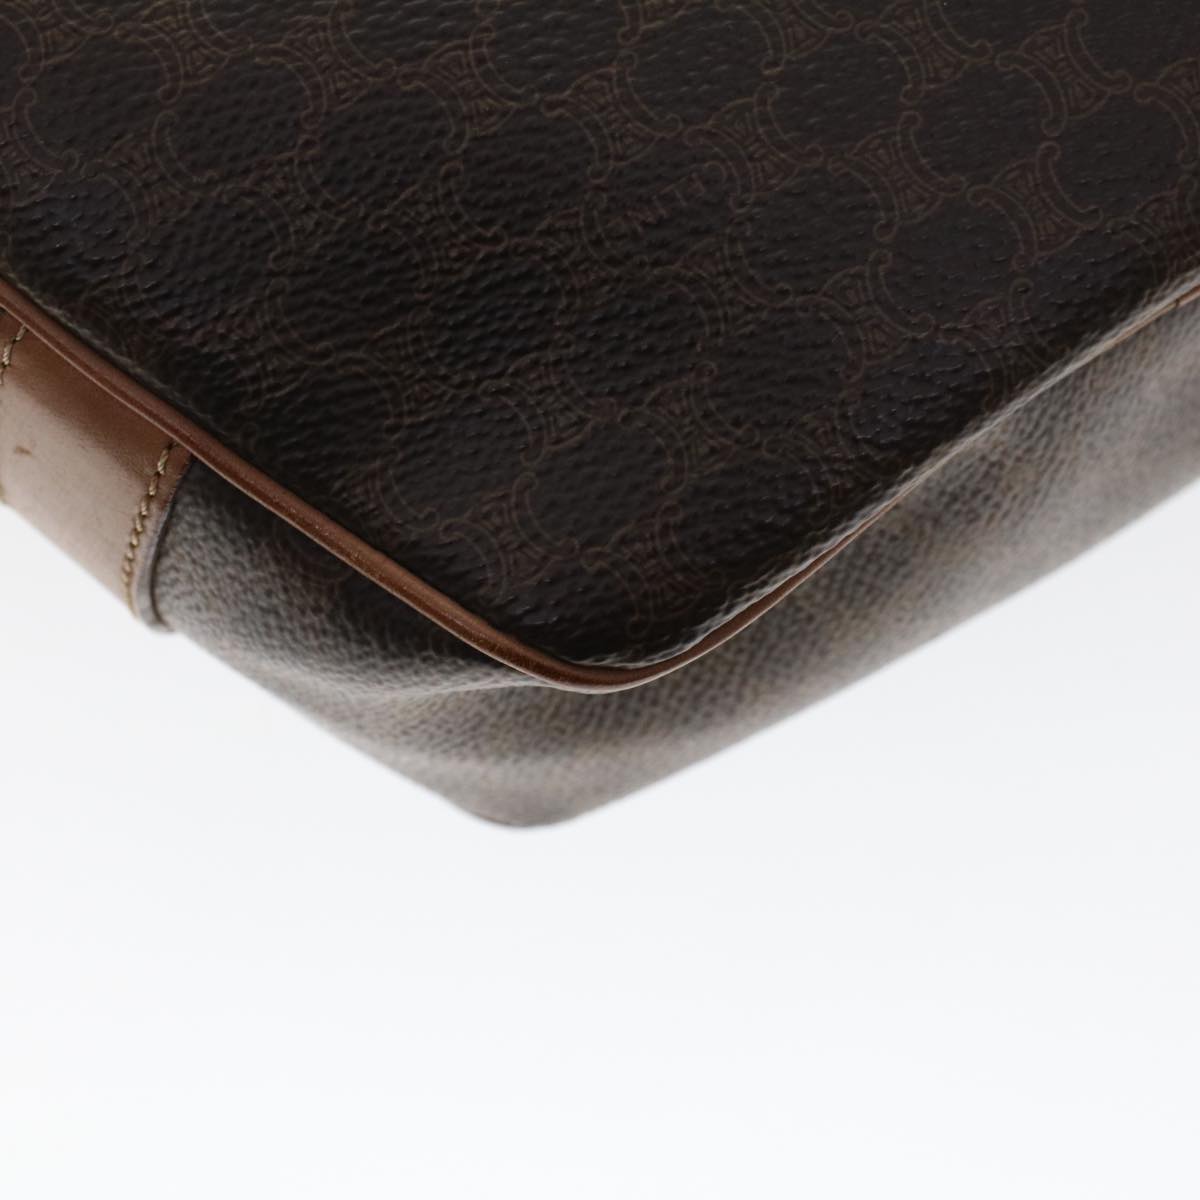 CELINE Macadam Canvas Shoulder Bag PVC Leather Brown Auth ar9832